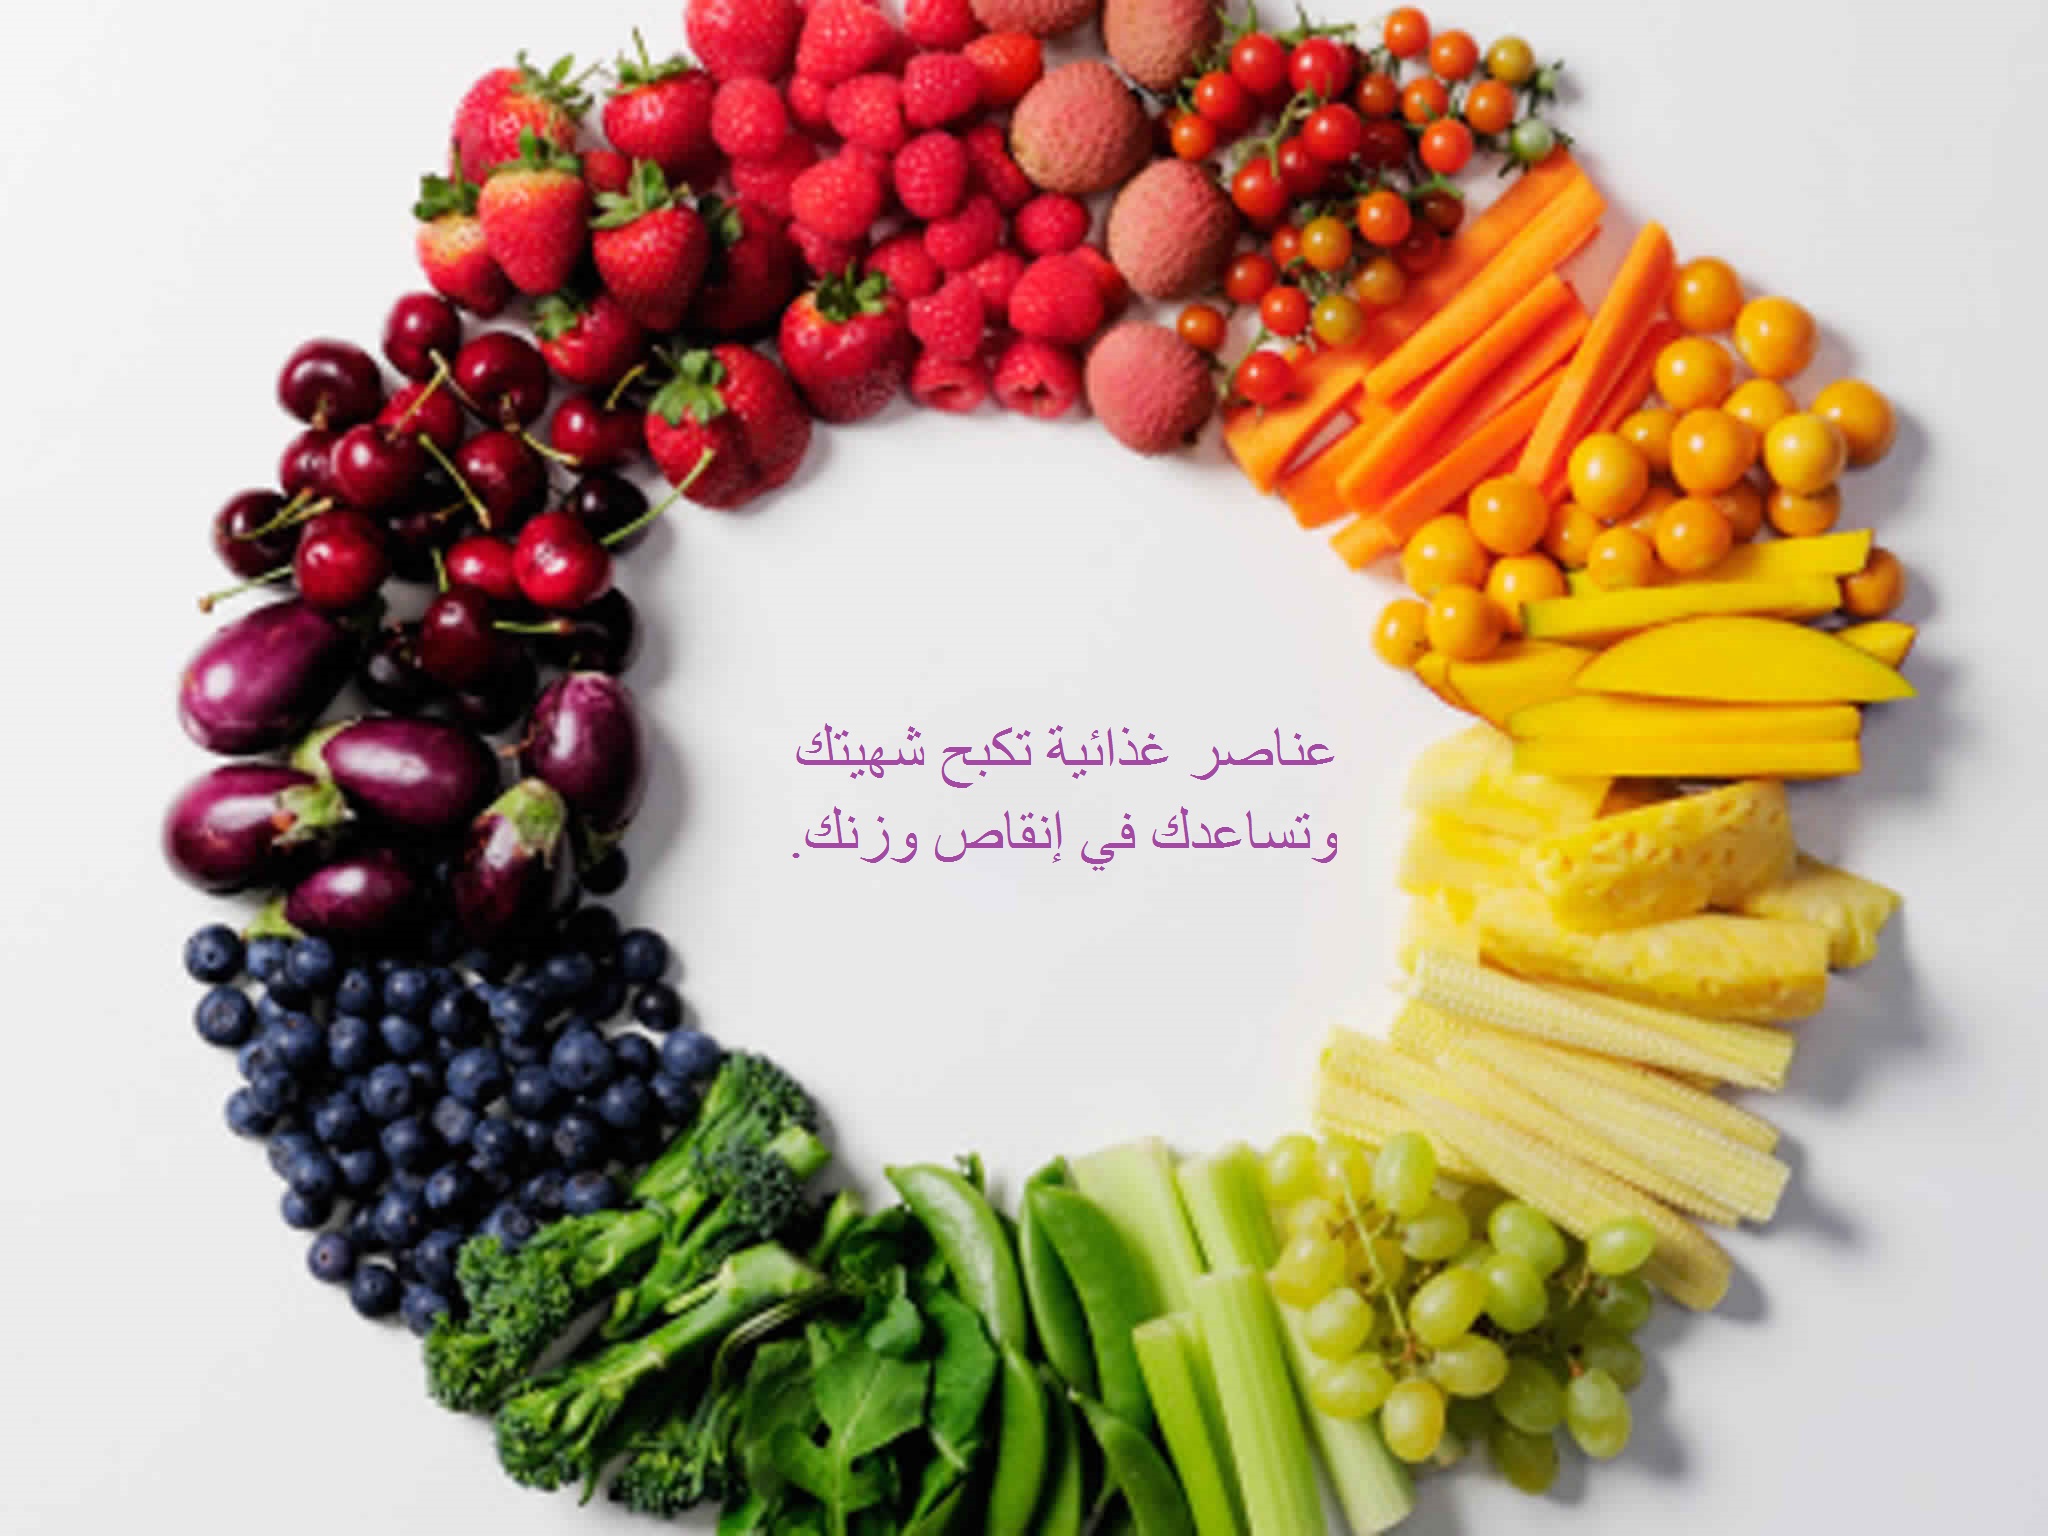 عناصر غذائية تكبح شهيتك وتساعدك في إنقاص وزنك.